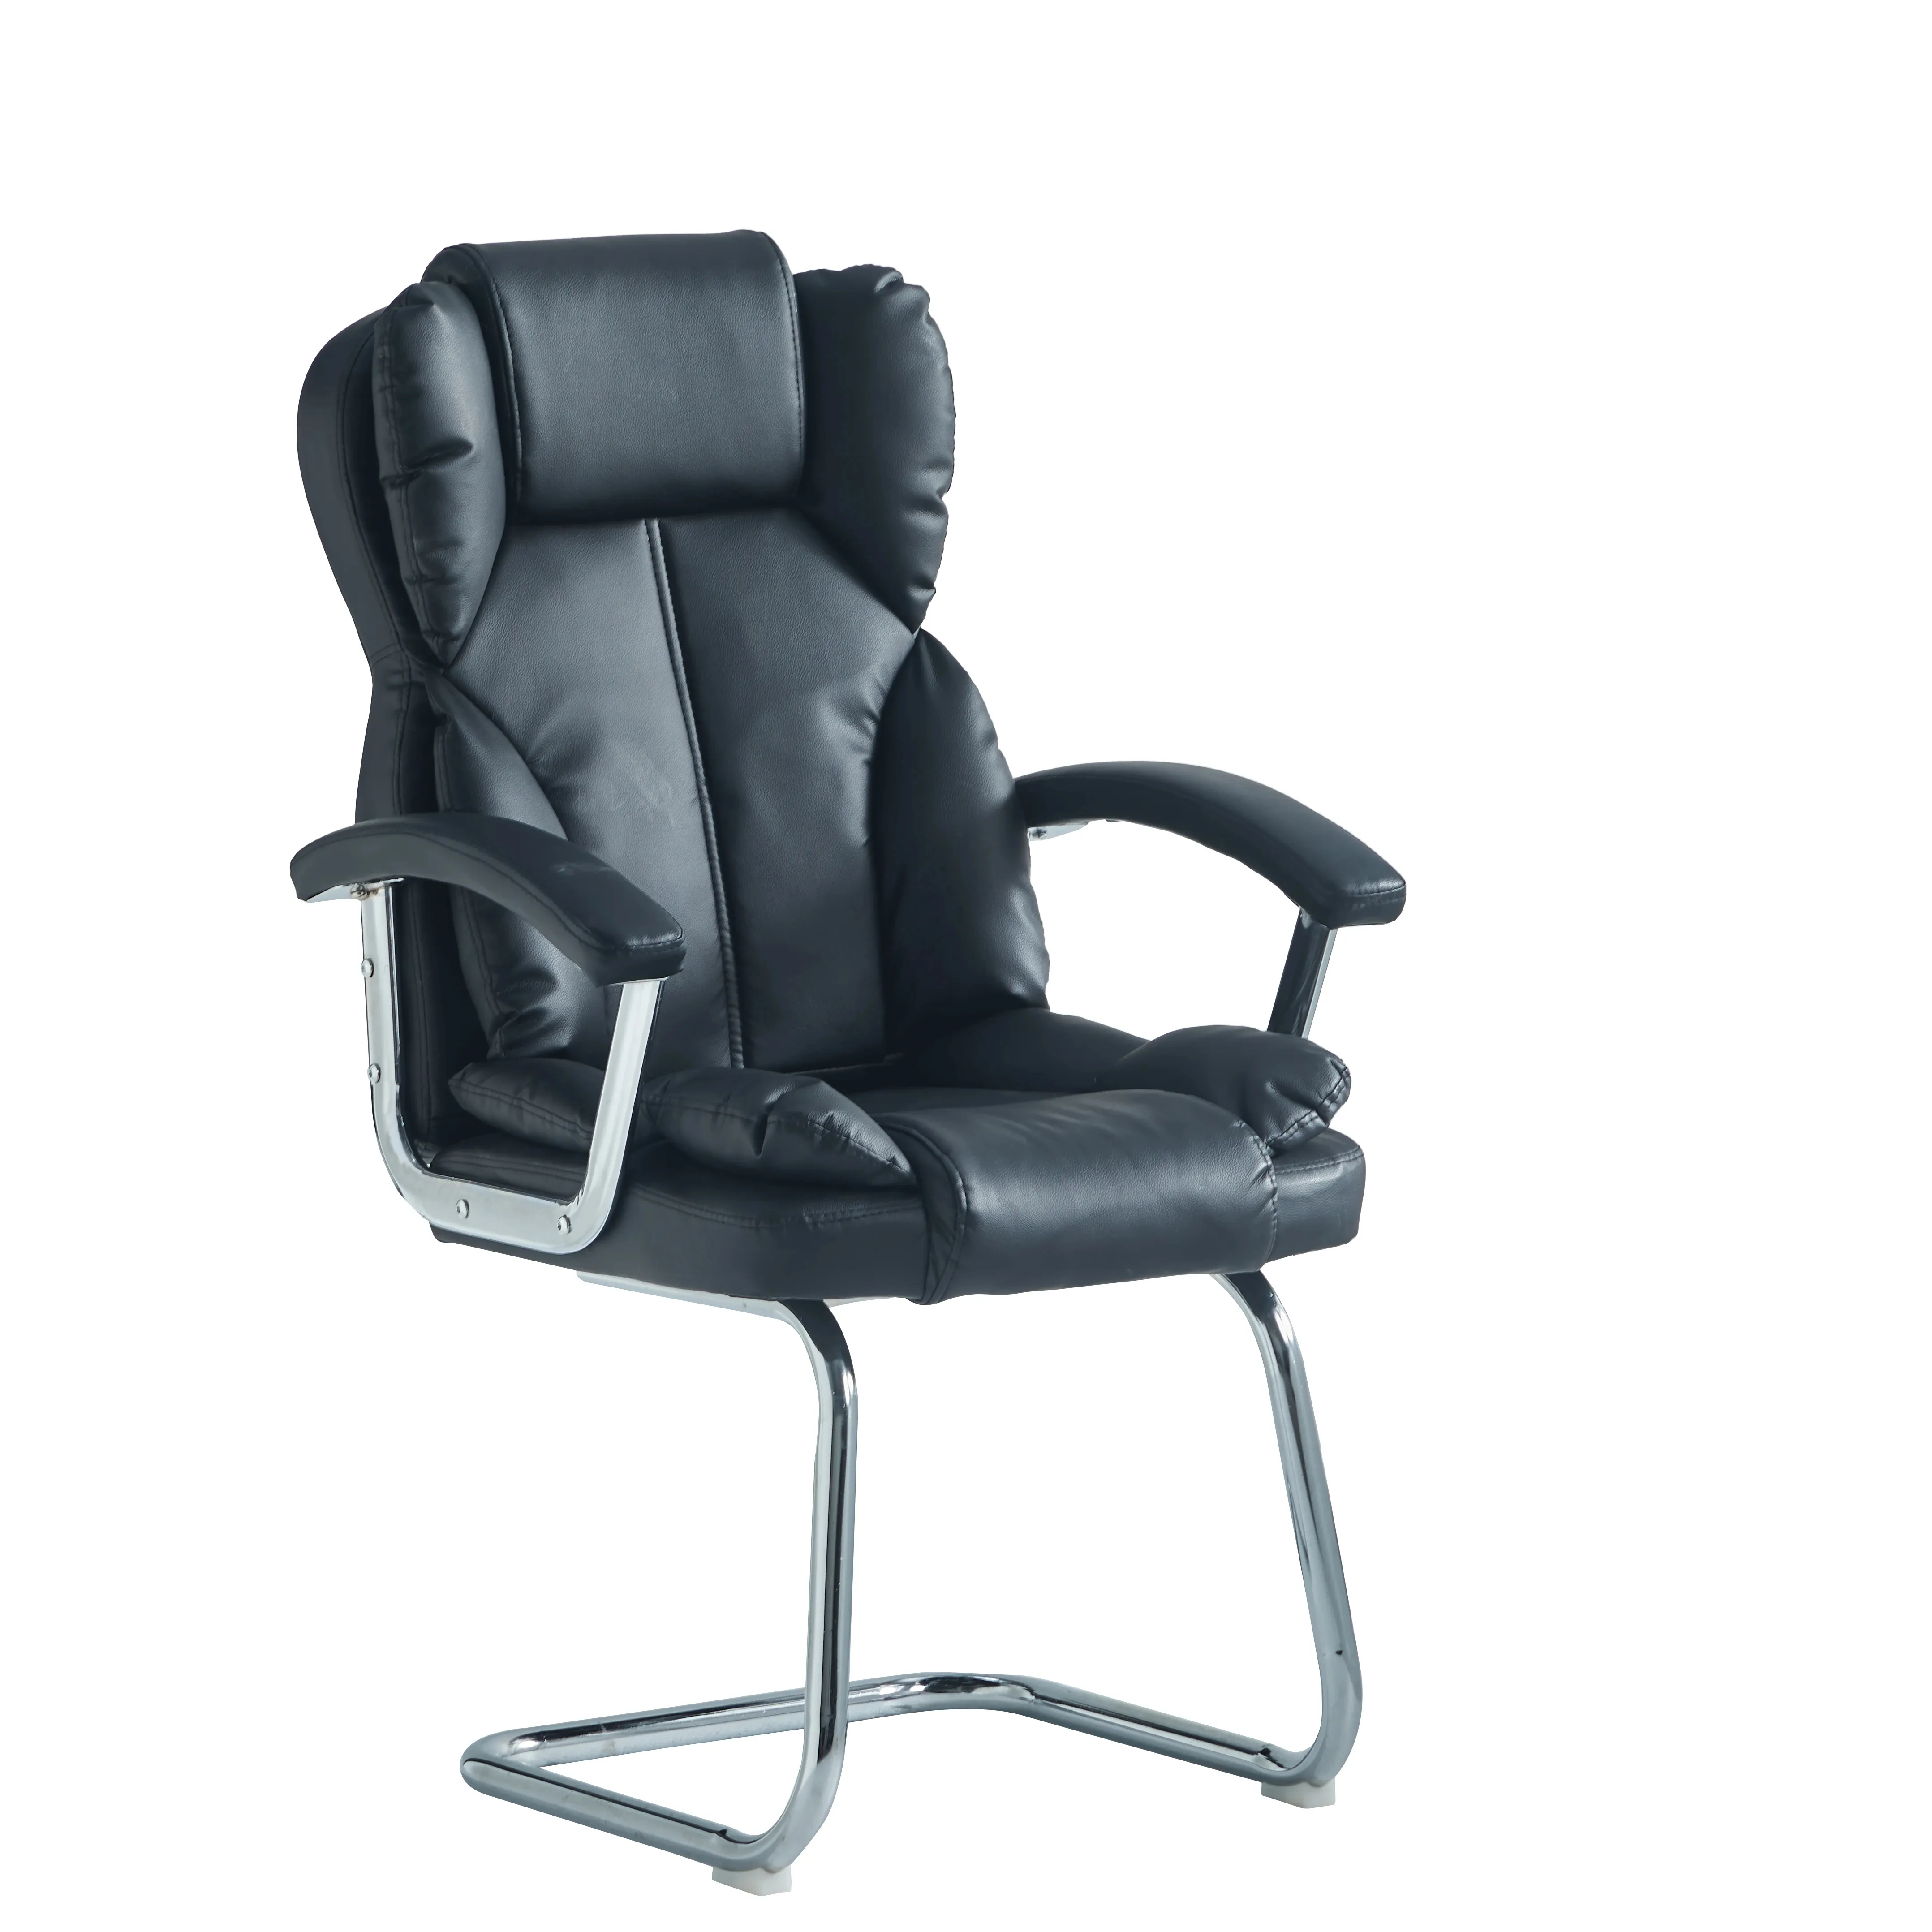 高品質メタルフレームレザーPuオフィスチェアゲストビジター寝椅子スタッフマネージャーチェア